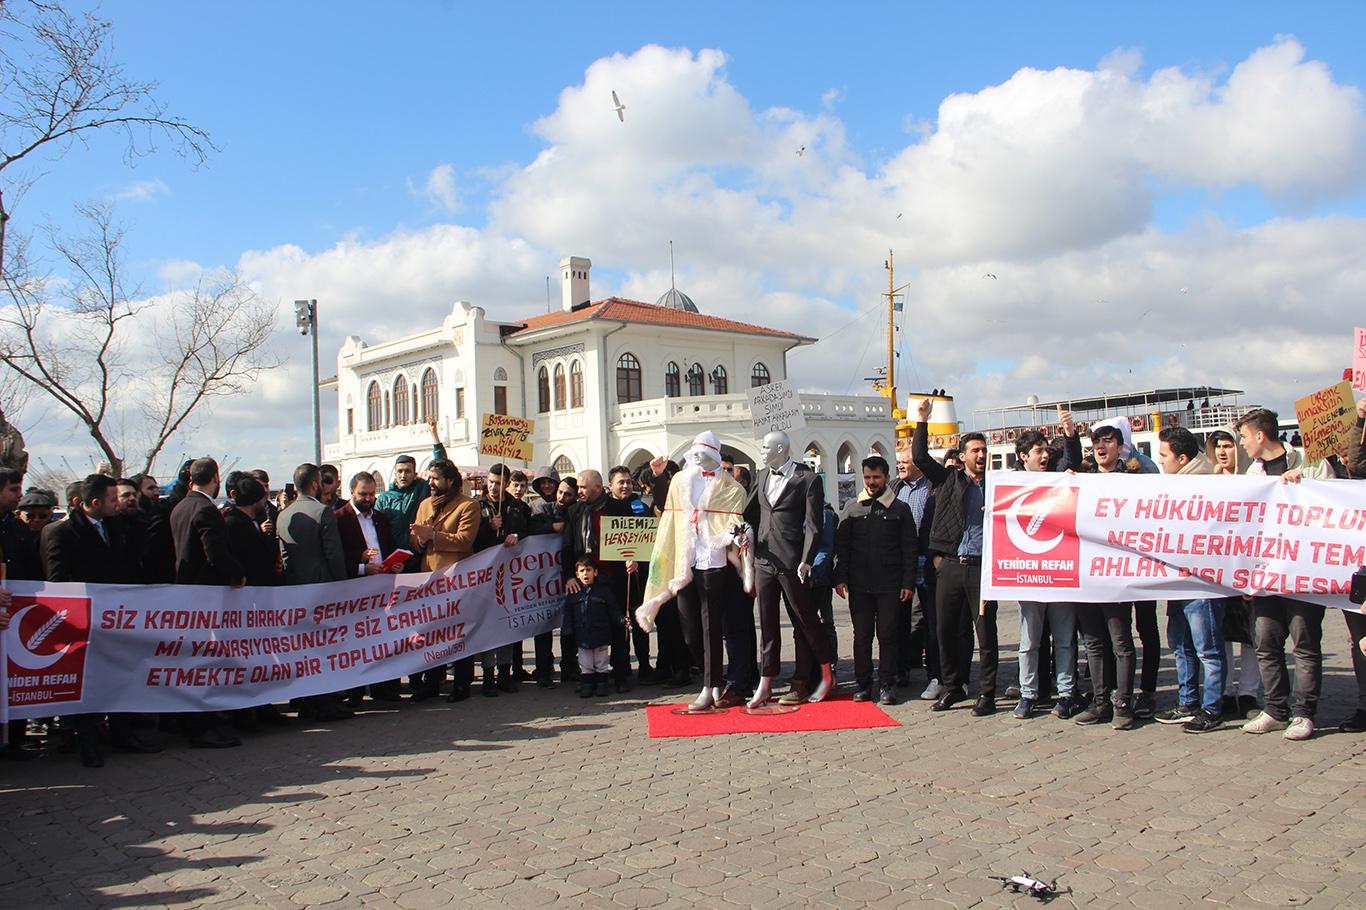  Yeniden Refah Partisi: İstanbul Sözleşmesi ile ilgili önlem almaya davet ediyoruz